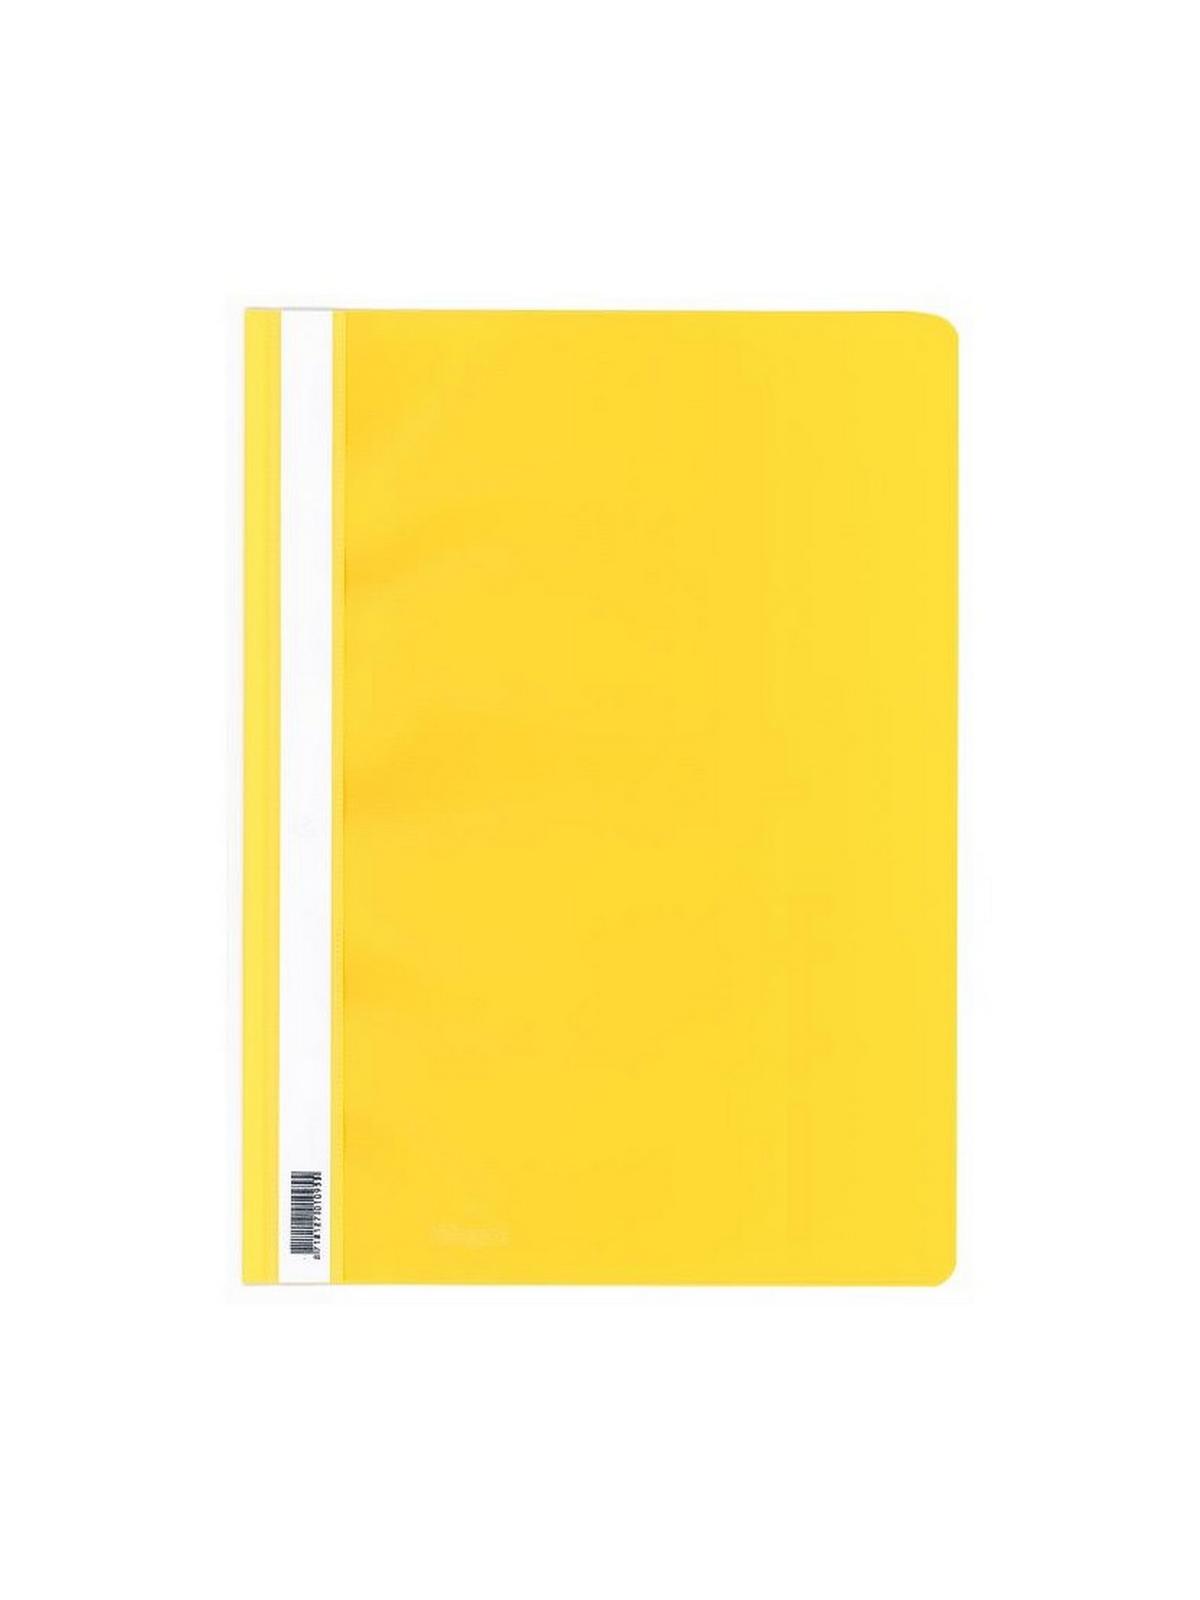 Ντοσιέ πλαστικο με έλασμα pp (Flat Files) κίτρινο